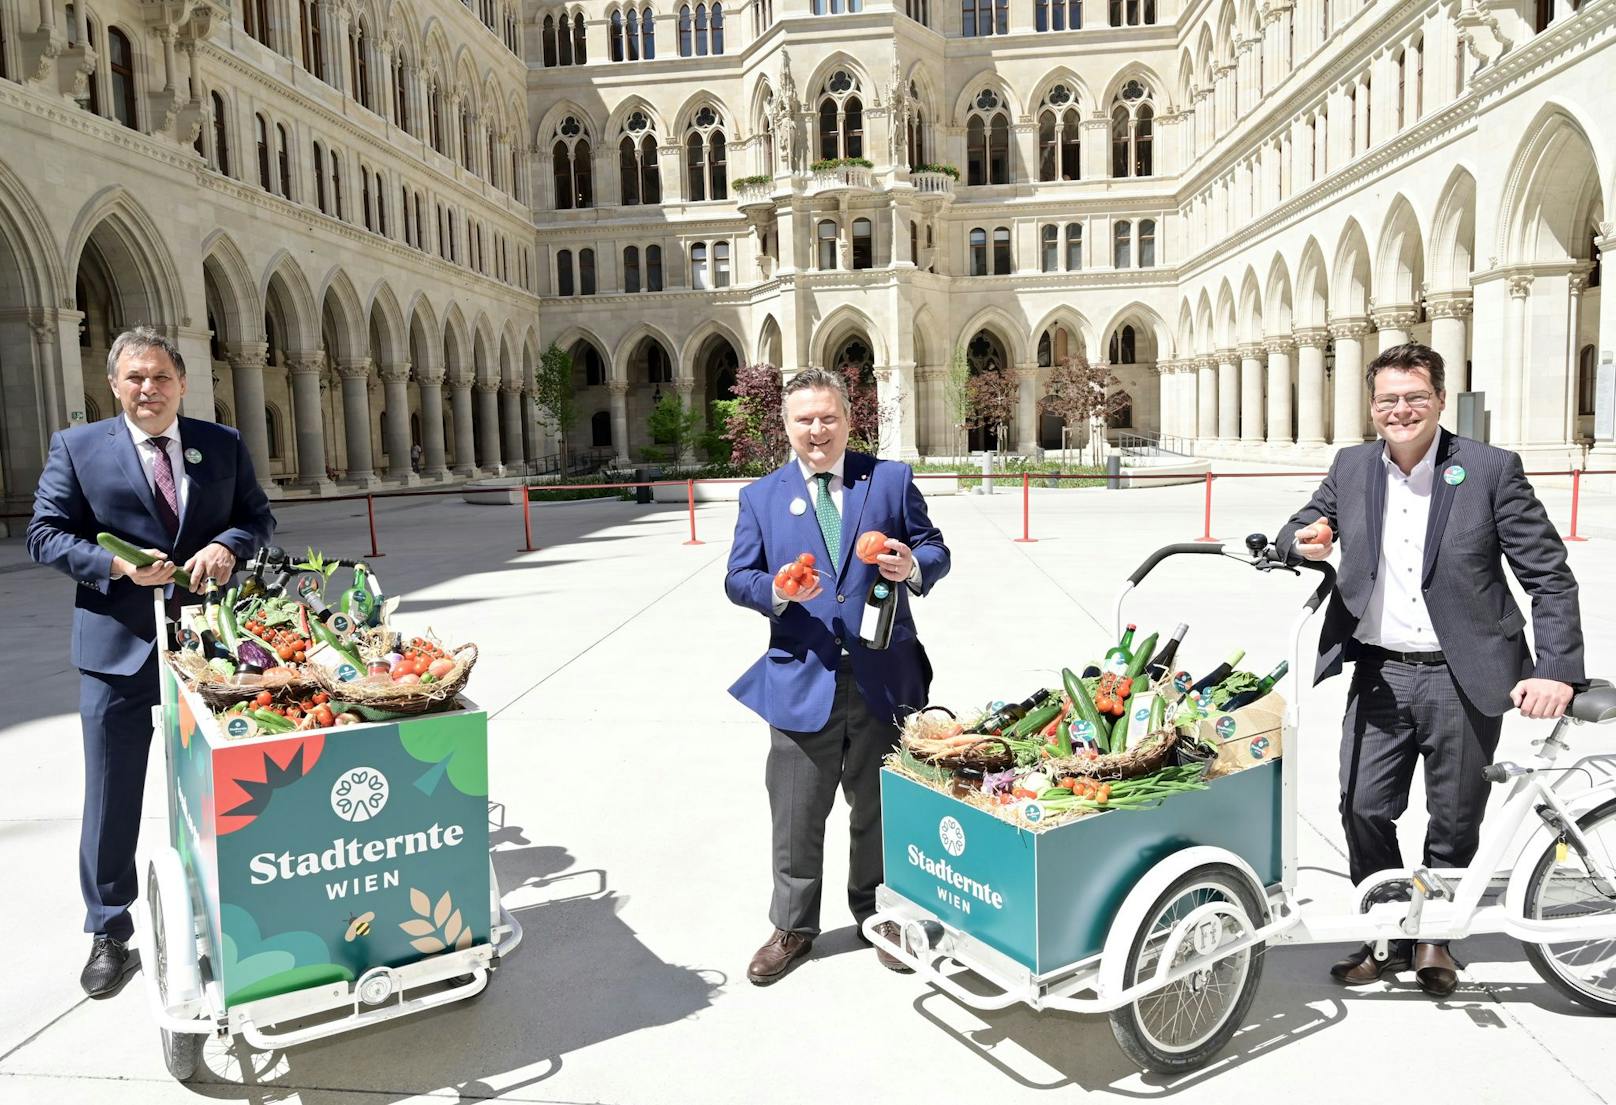 Die Marke für landwirtschaftliche Produkte aus Wien wurde im Rathaus gemeinsam präsentiert (von links nach rechts): LK-Präsident Franz Windisch, Bürgermeister Michael Ludwig (SPÖ) und Umweltstadtrat Jürgen Czernohorszky (SPÖ).